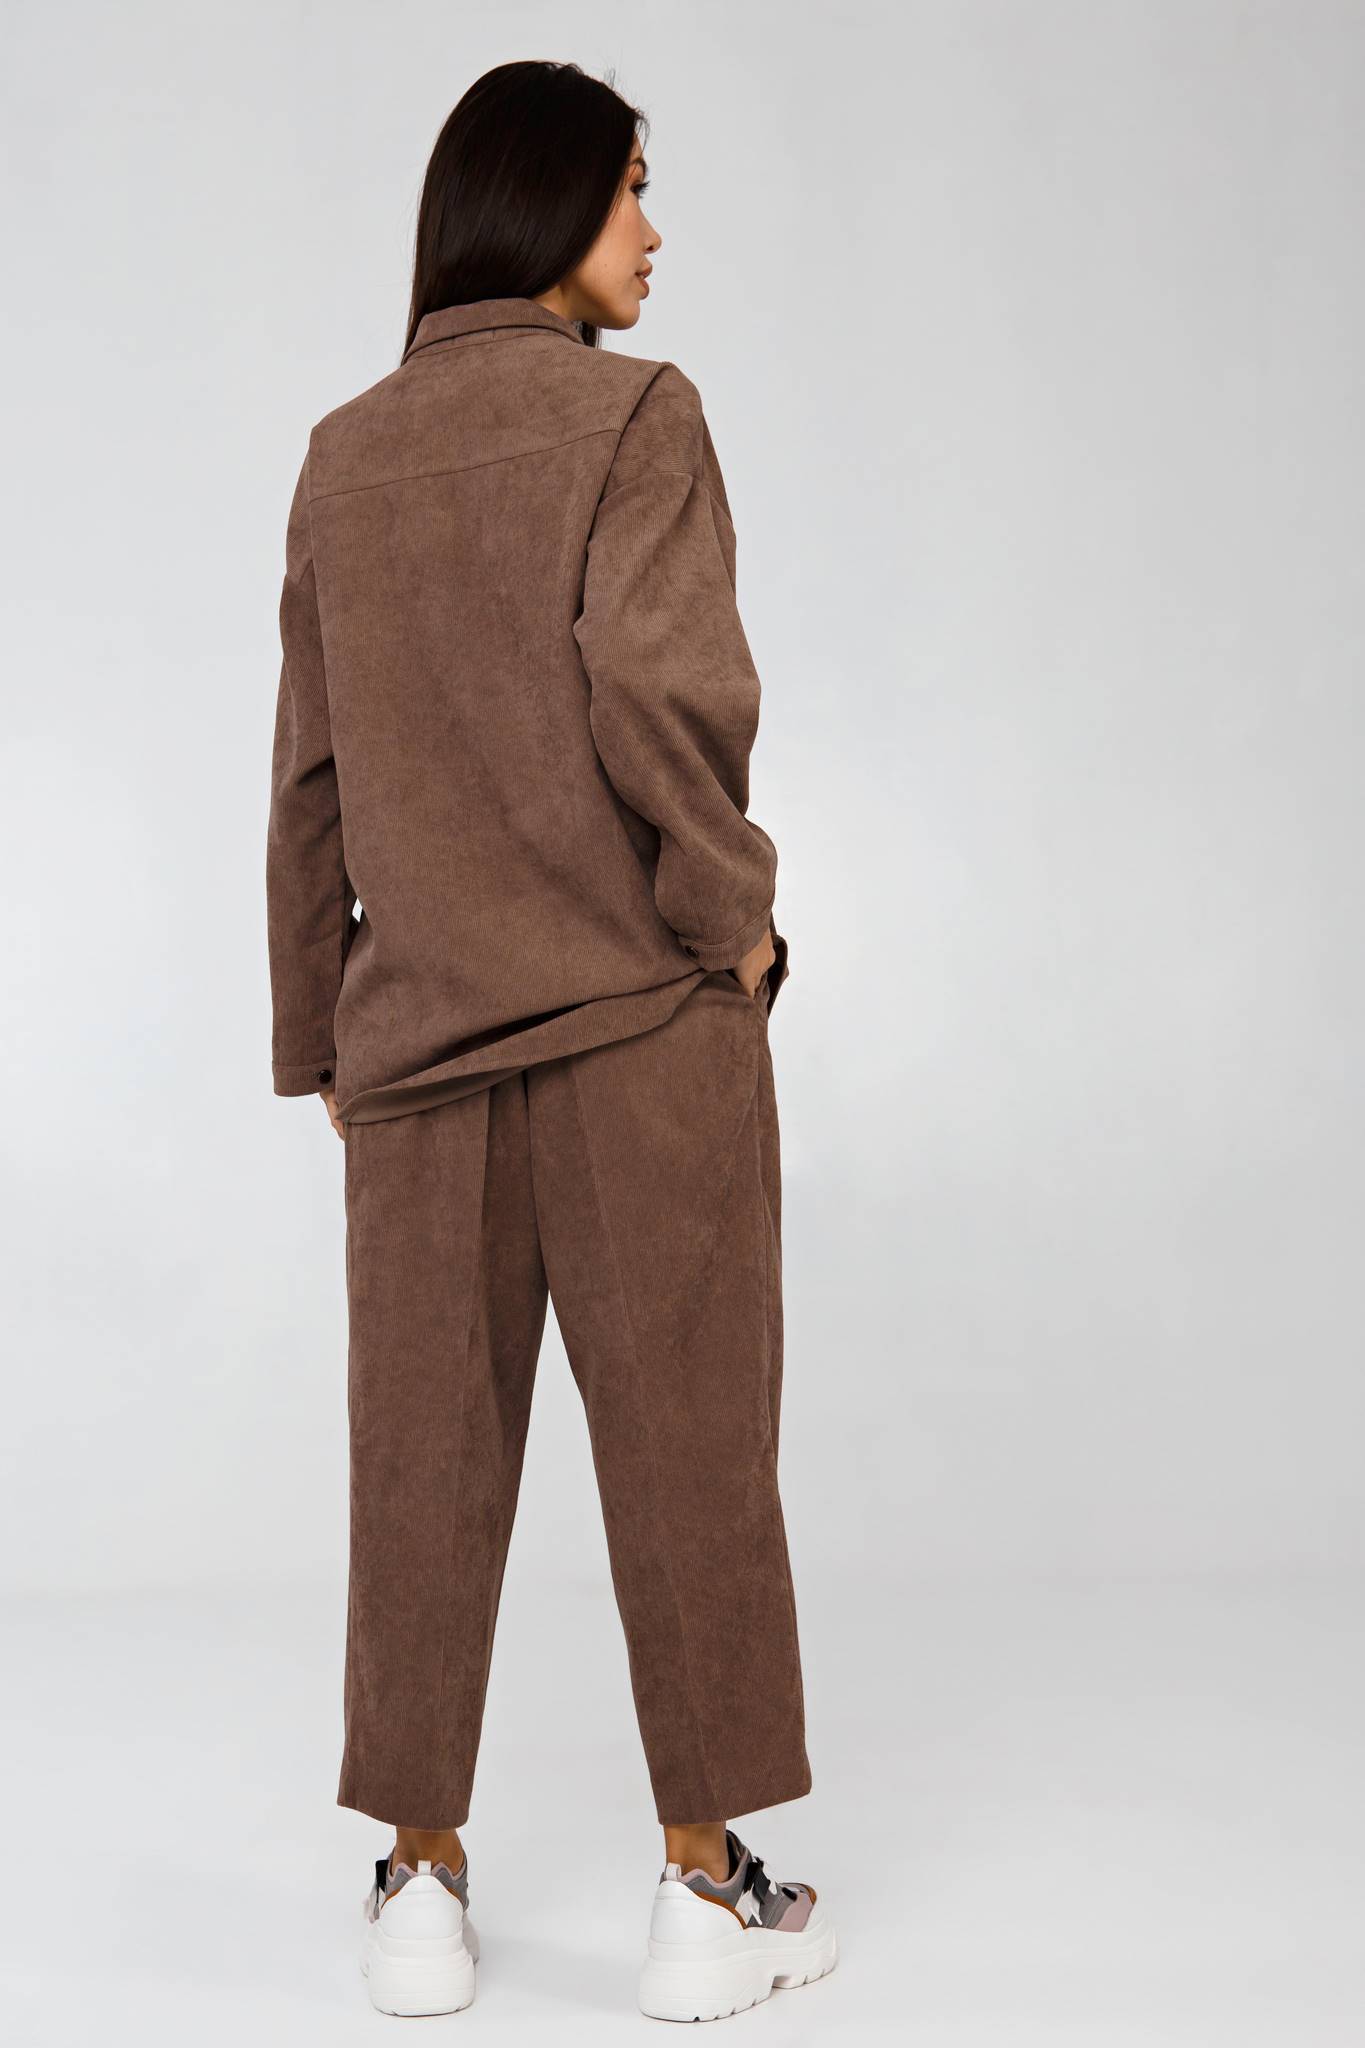 Вельветовый костюм в рубчик коричневый YOS от украинского бренда Your Own Style